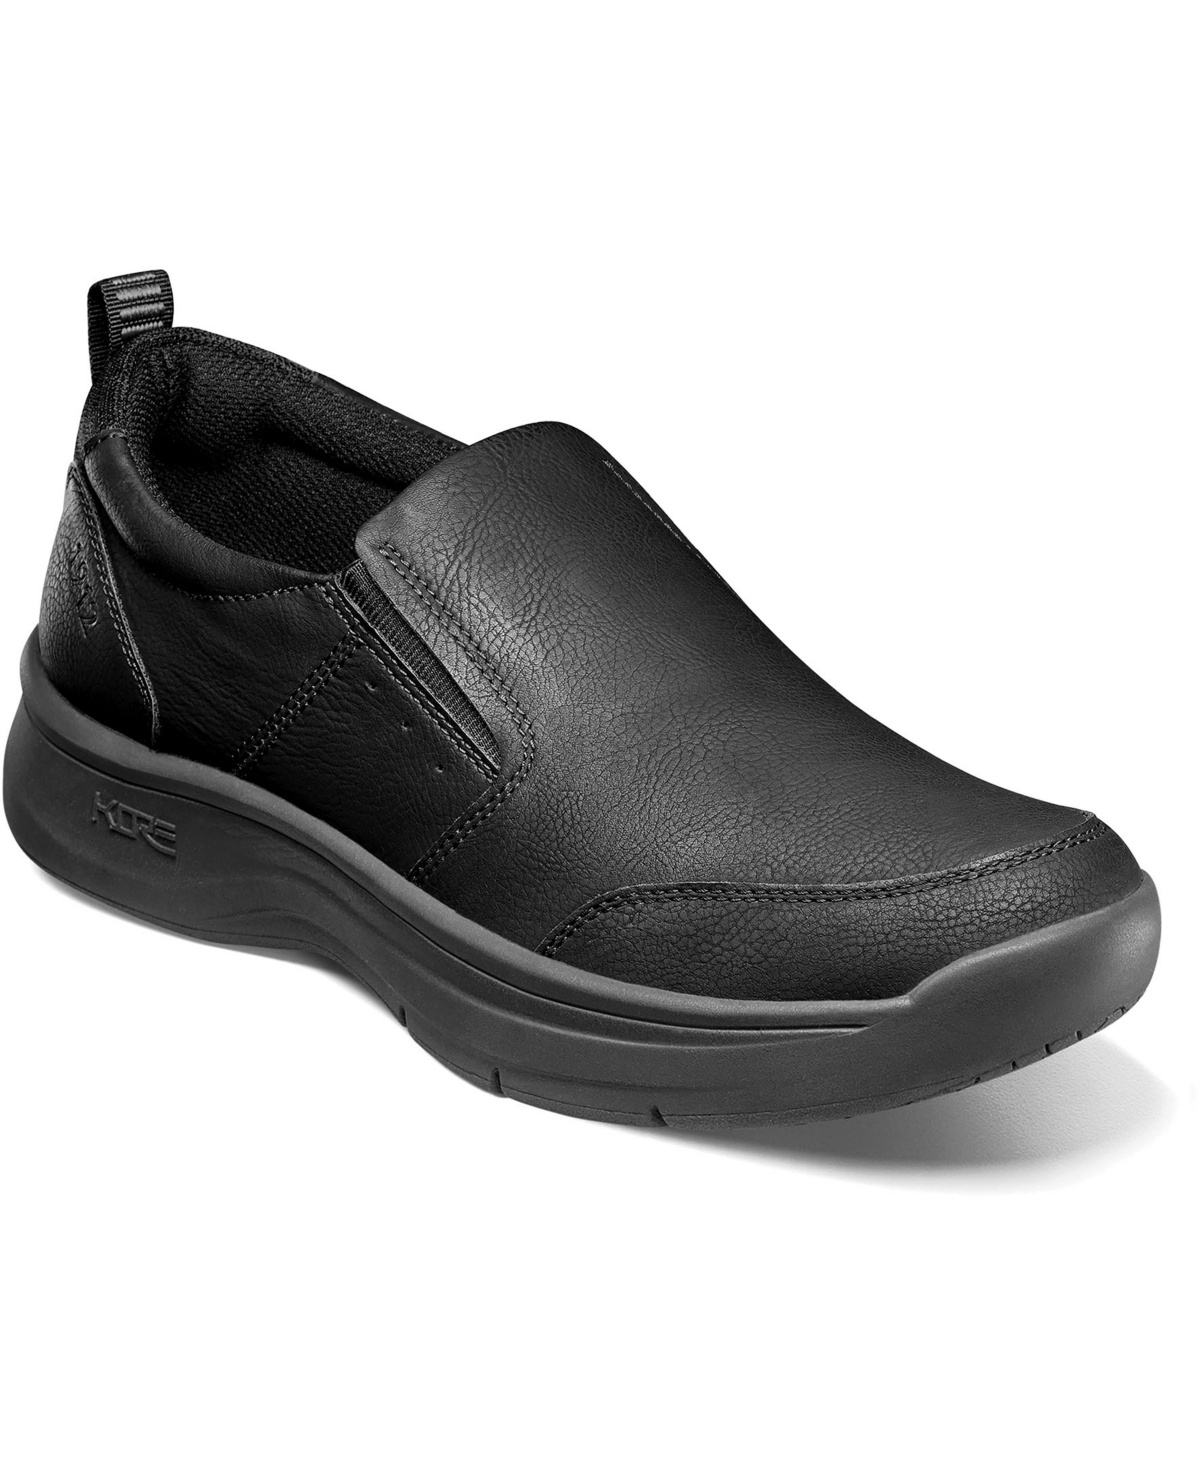 Men's Kore Elevate Moc Toe Slip-On Shoes - Dark Brown